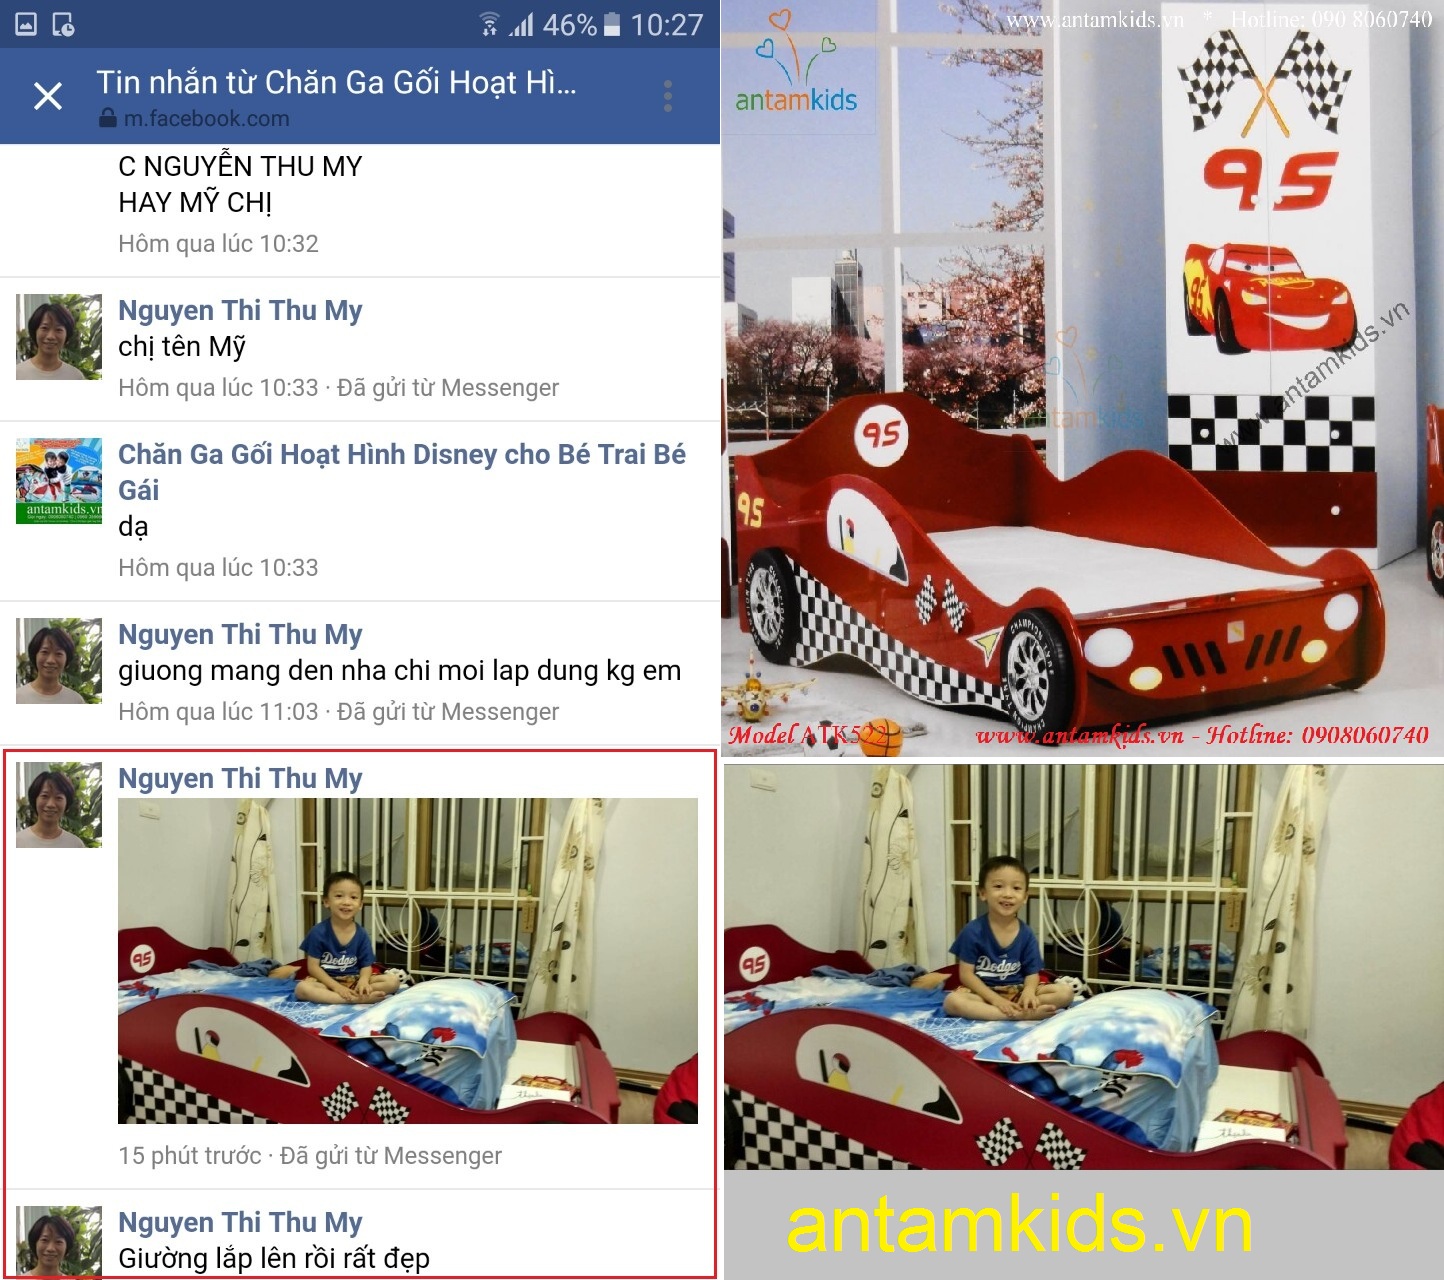 Giường ngủ hình xe ô tô McQueen cho bé trai, giuong oto màu đỏ sành điệu